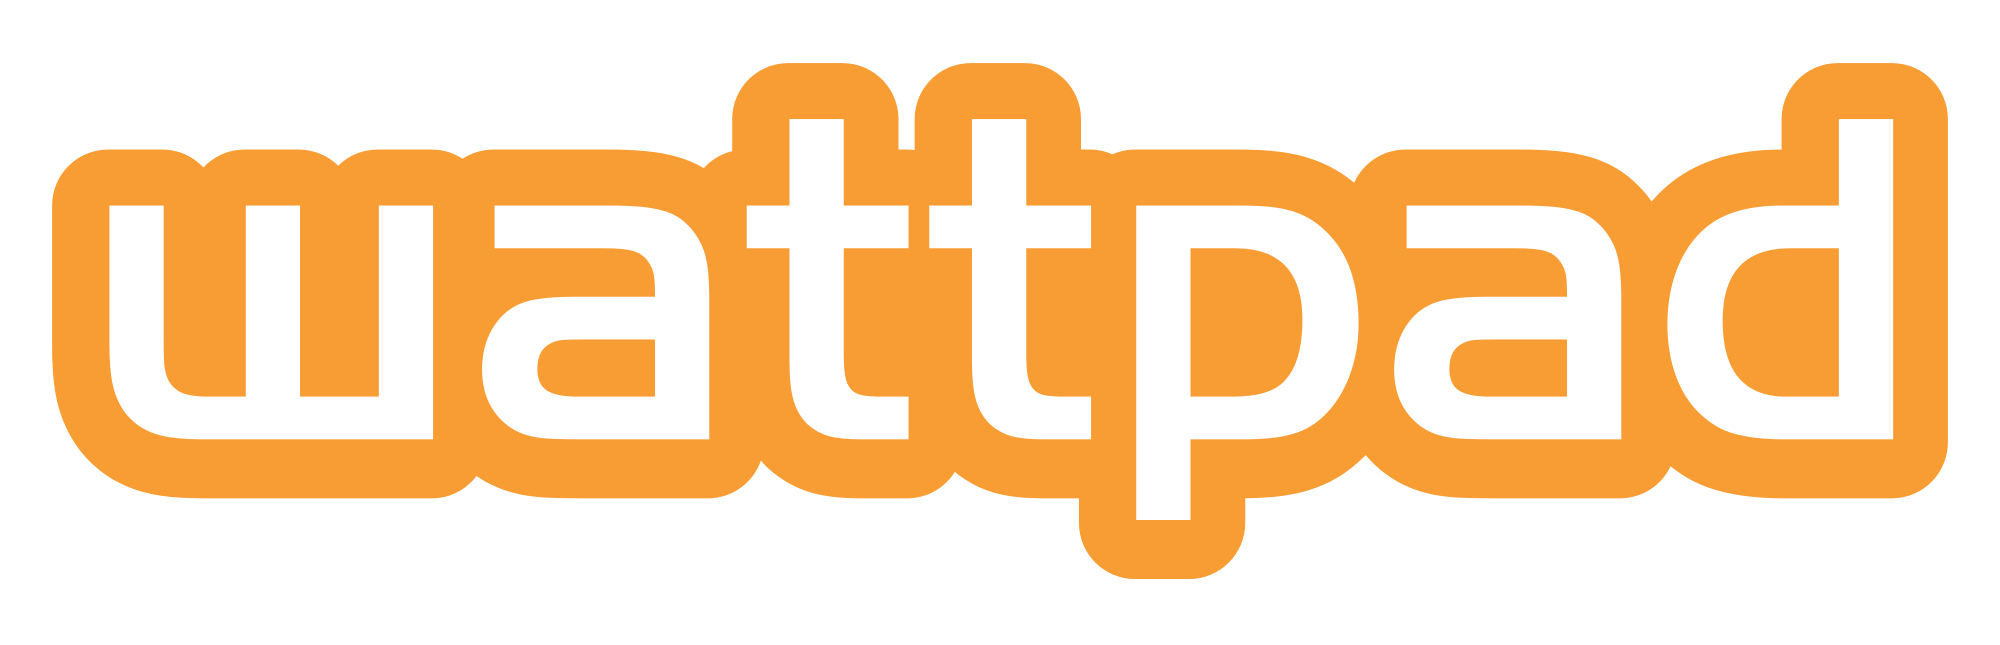 Wattpad App Logo - Wattpad Logos